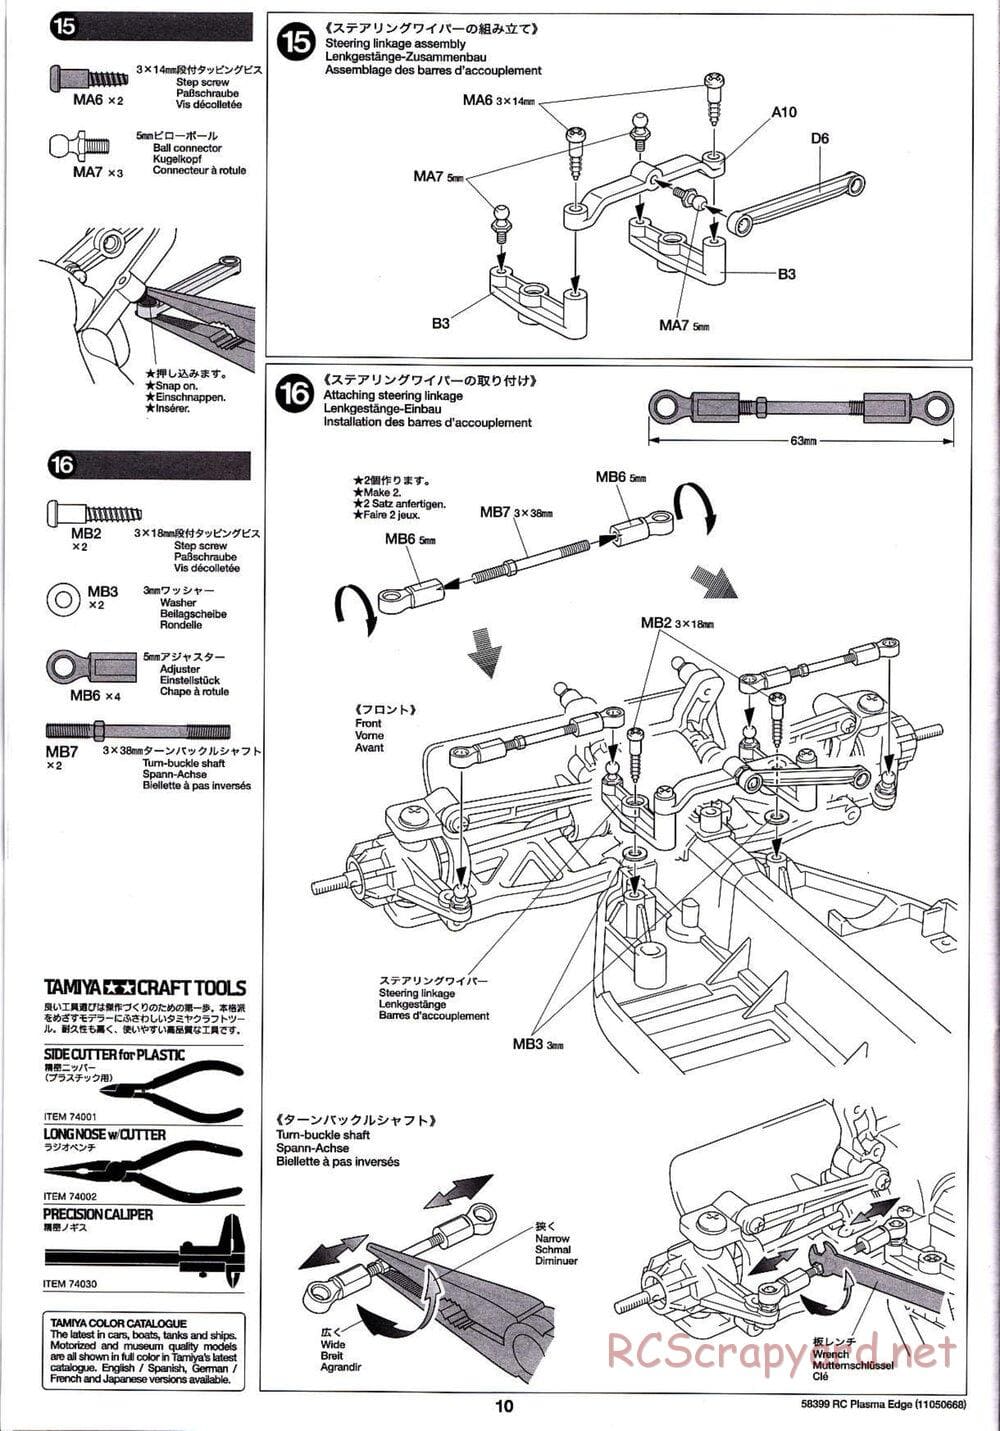 Tamiya - Plasma Edge Chassis - Manual - Page 10